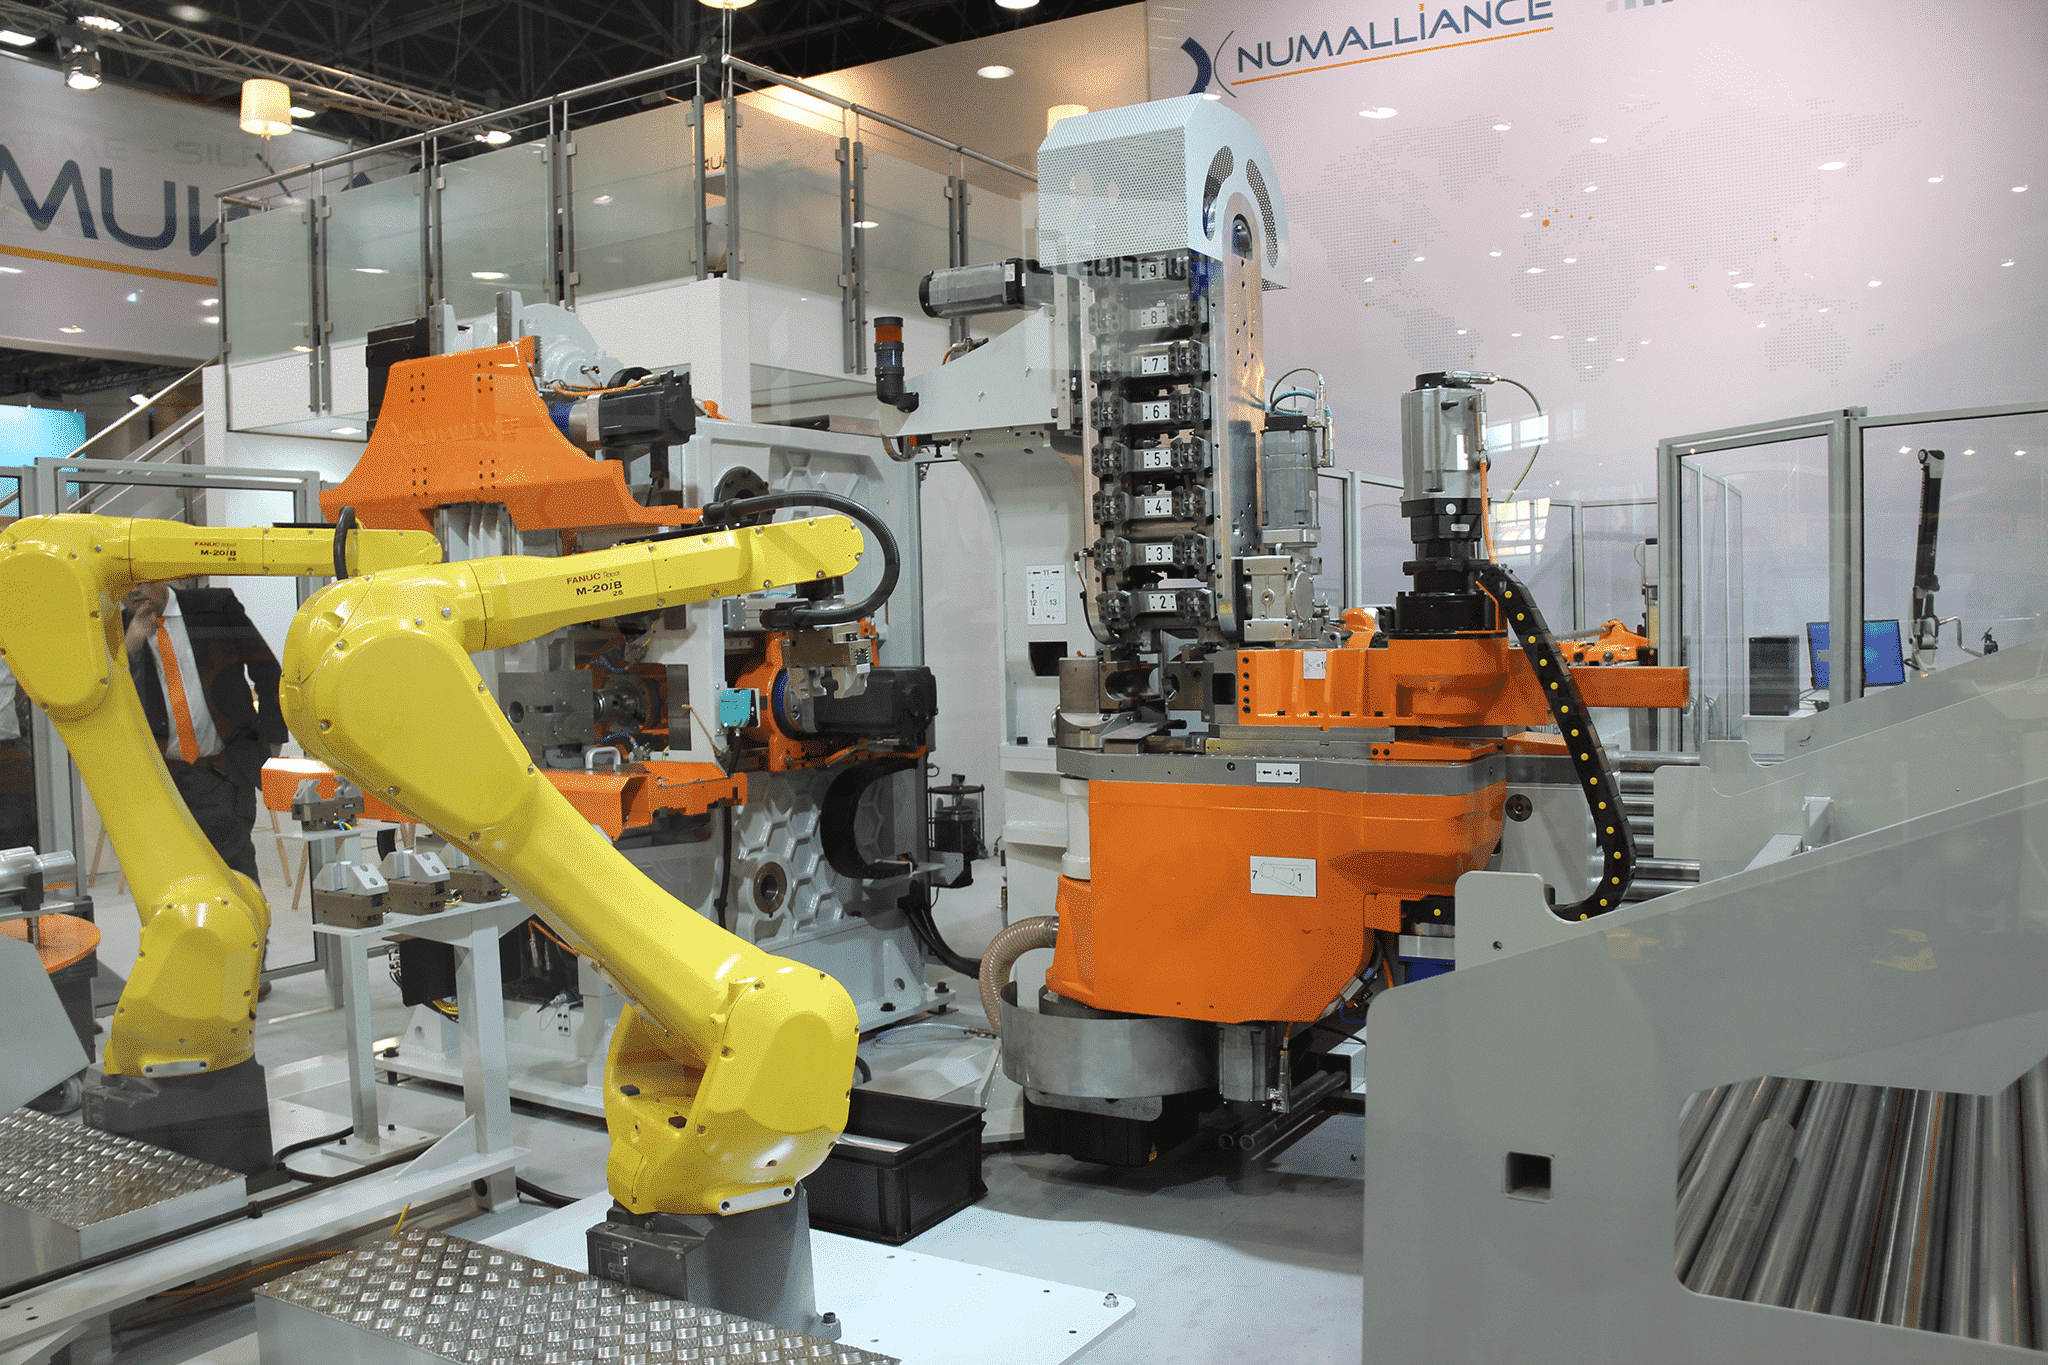 Celdas de producción y robots Numalliance